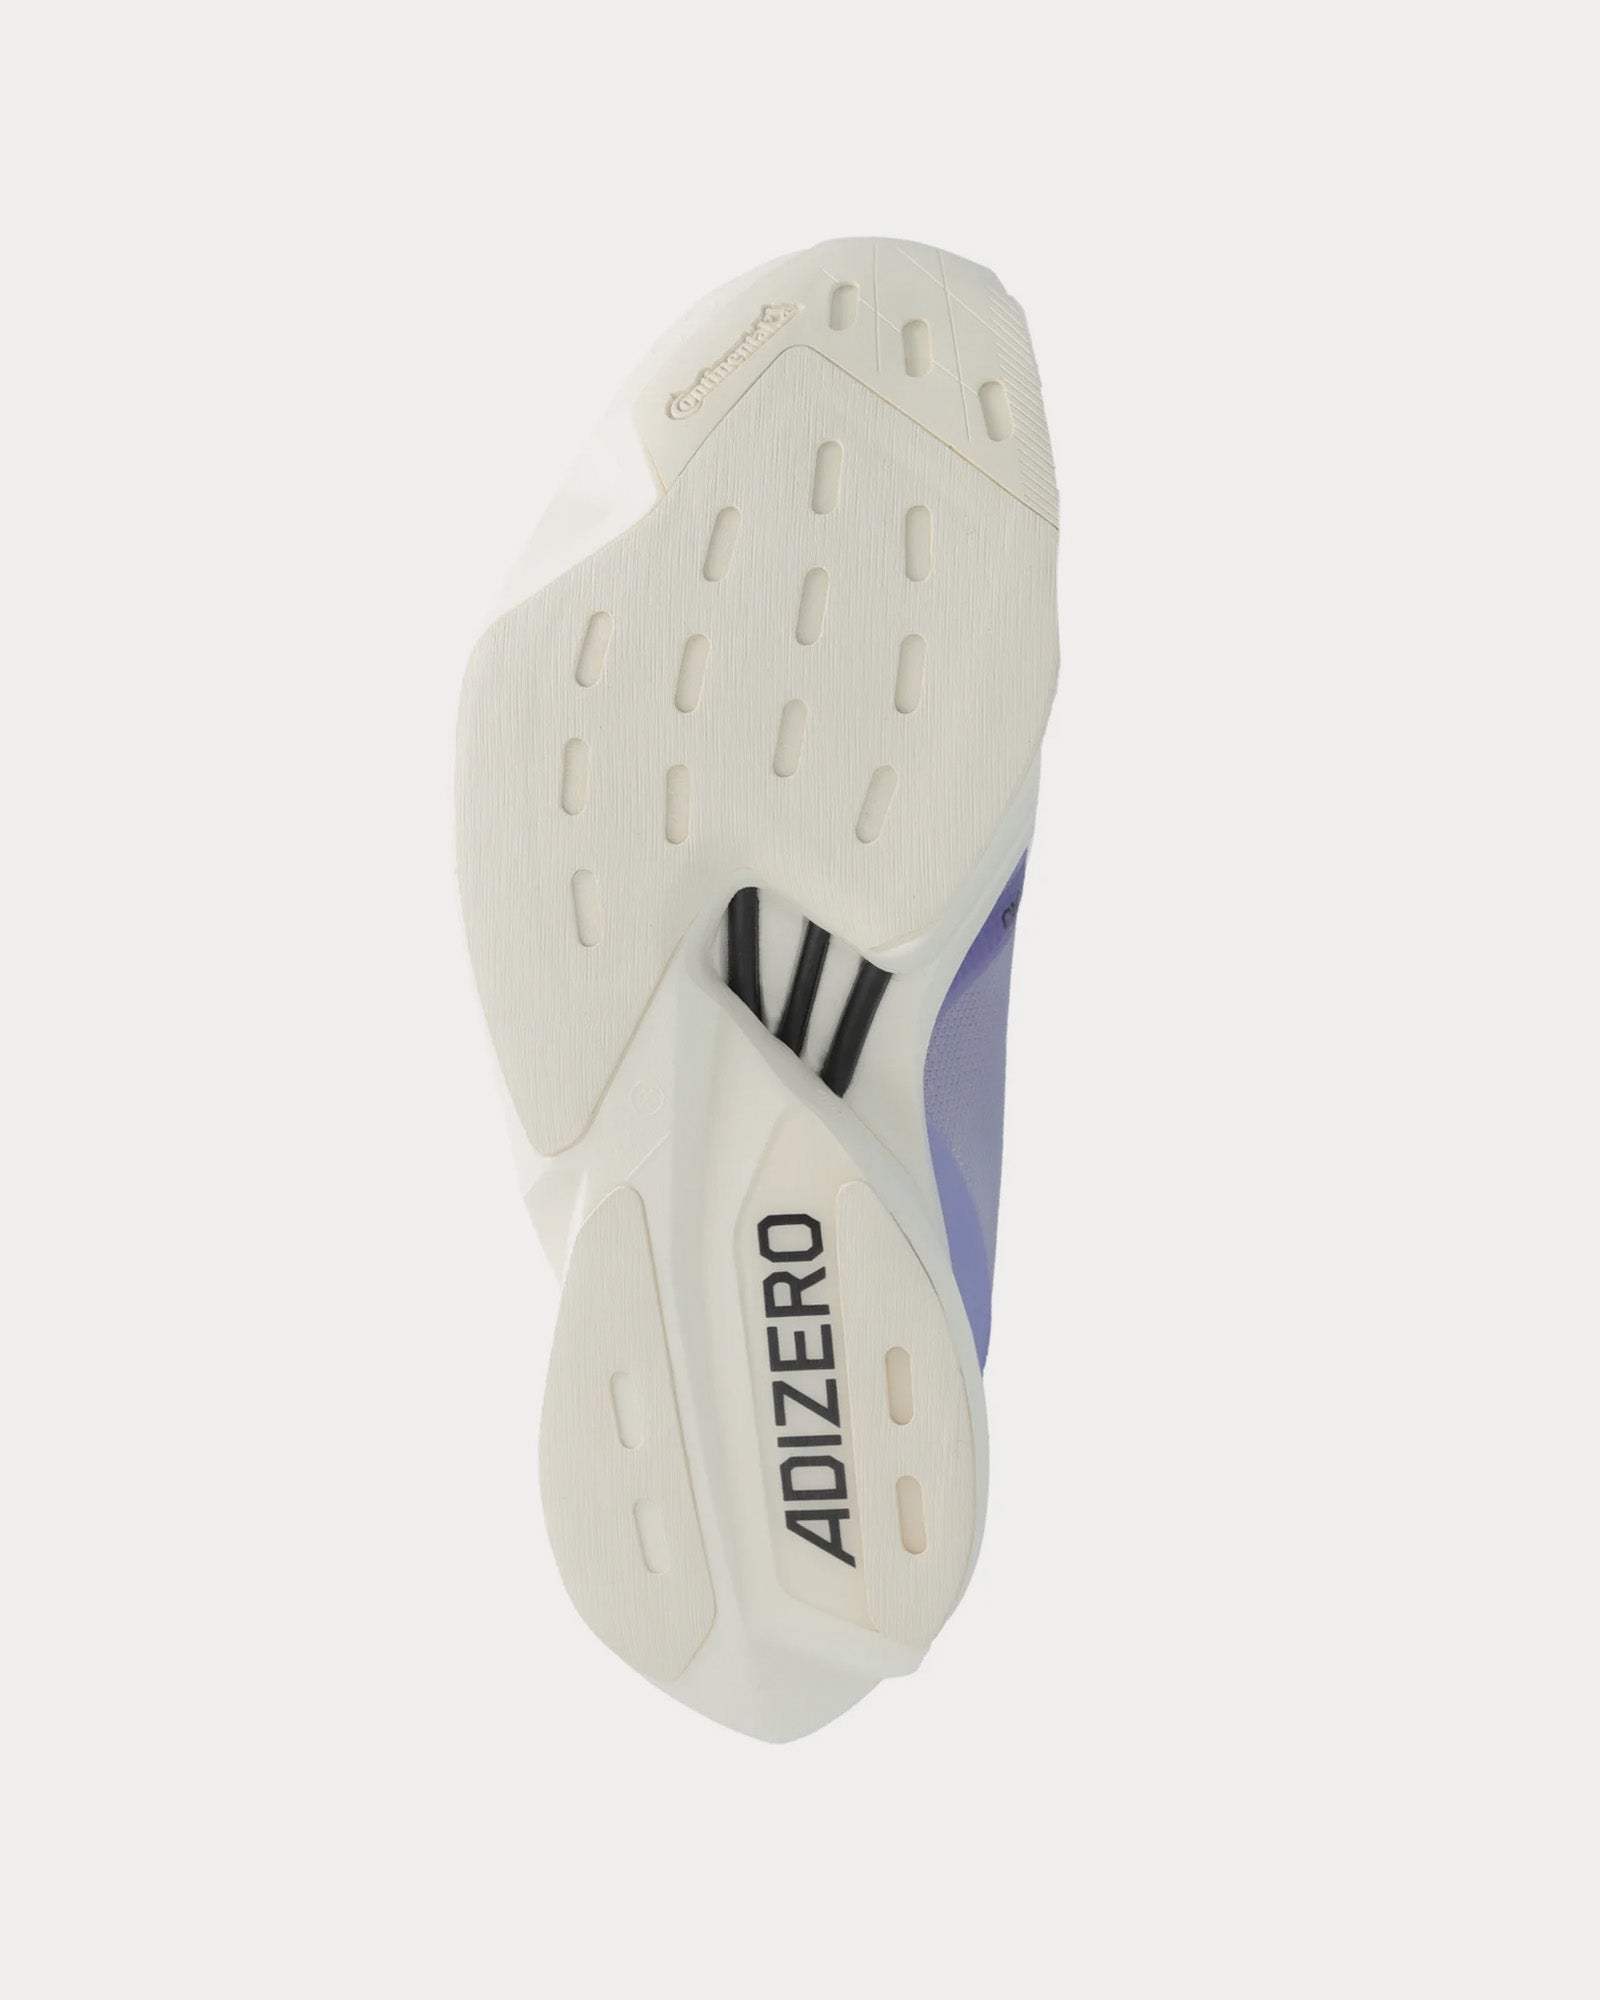 Y-3 - Adios Pro 3.0 Dust Purple / Dust Purple Running Shoes